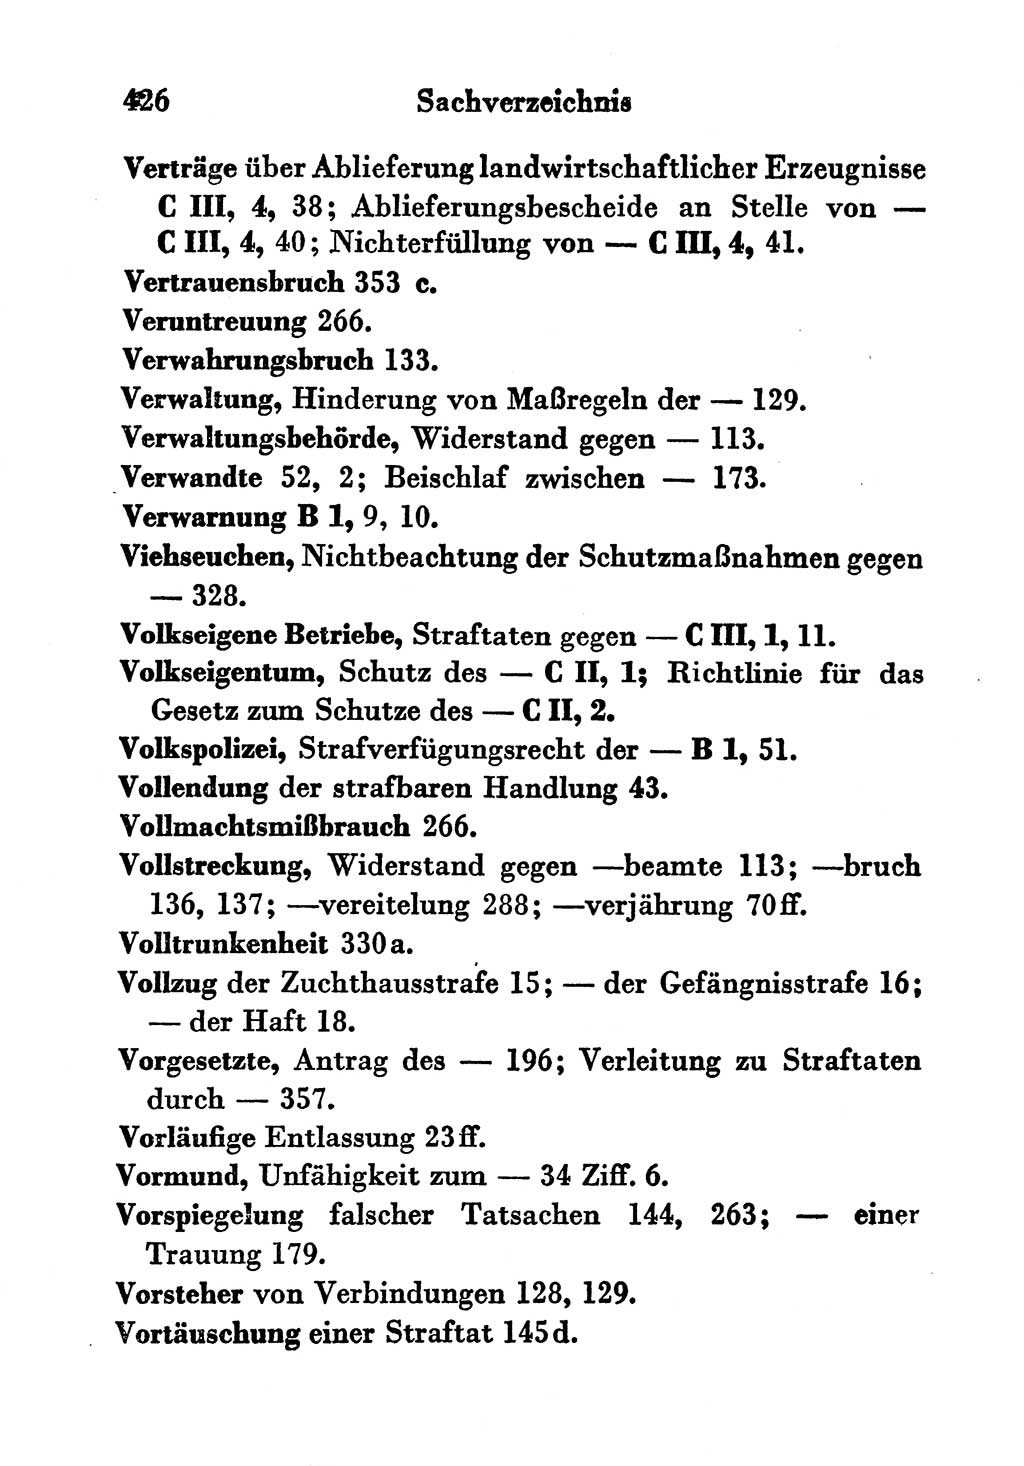 Strafgesetzbuch (StGB) und andere Strafgesetze [Deutsche Demokratische Republik (DDR)] 1956, Seite 426 (StGB Strafges. DDR 1956, S. 426)